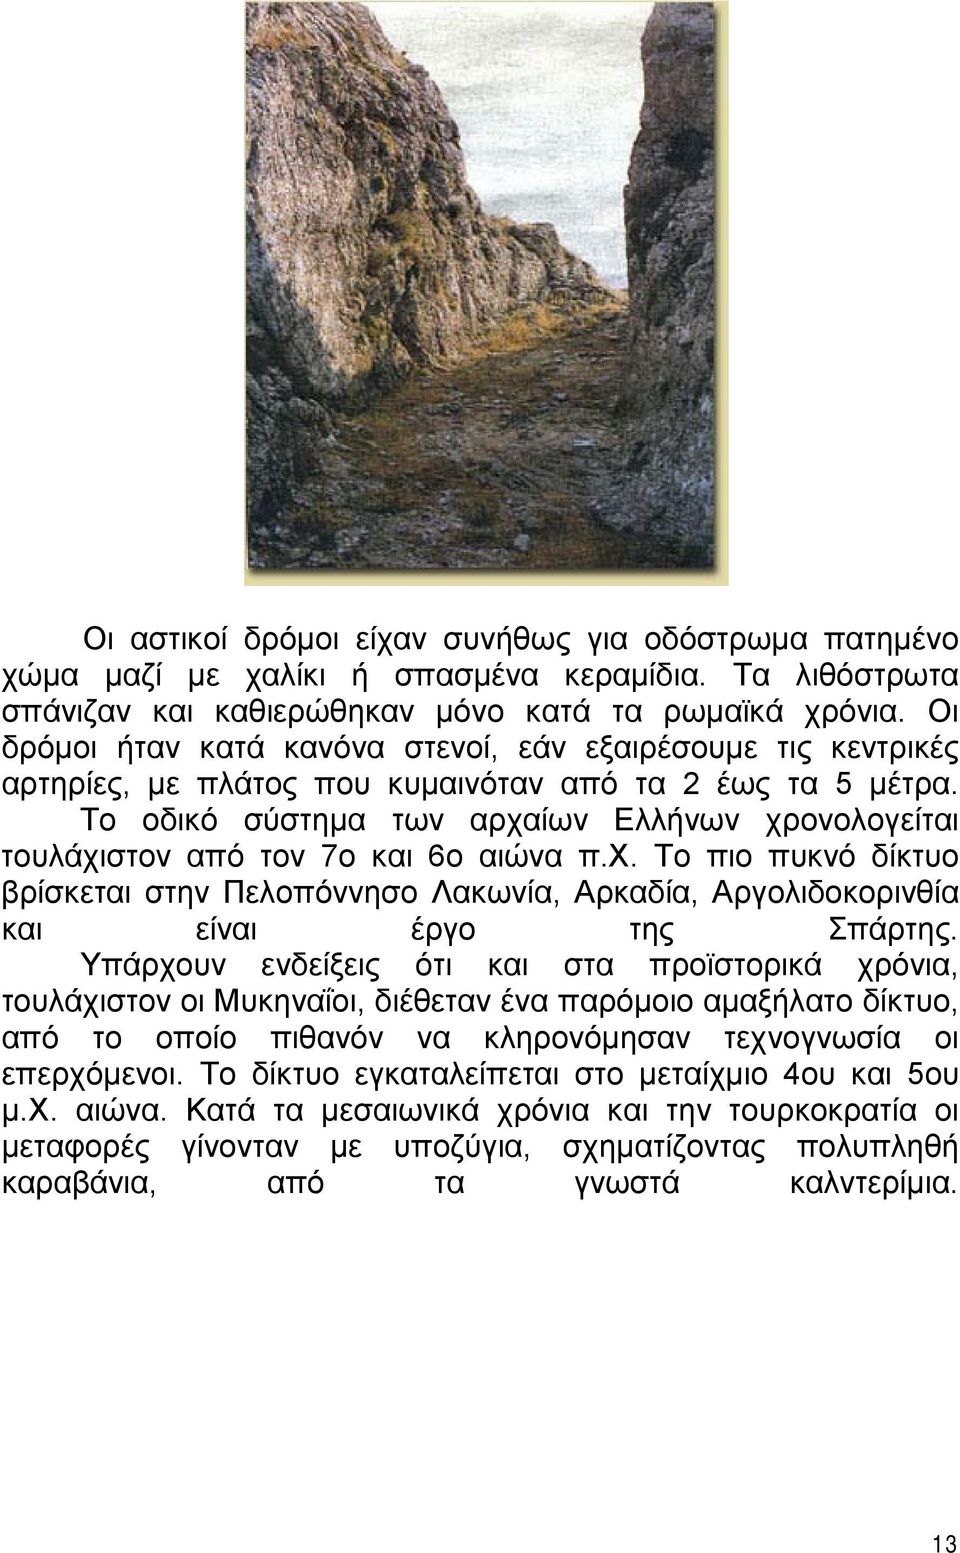 Το οδικό σύστημα των αρχαίων Ελλήνων χρονολογείται τουλάχιστον από τον 7ο και 6ο αιώνα π.χ. Το πιο πυκνό δίκτυο βρίσκεται στην Πελοπόννησο Λακωνία, Αρκαδία, Αργολιδοκορινθία και είναι έργο της Σπάρτης.